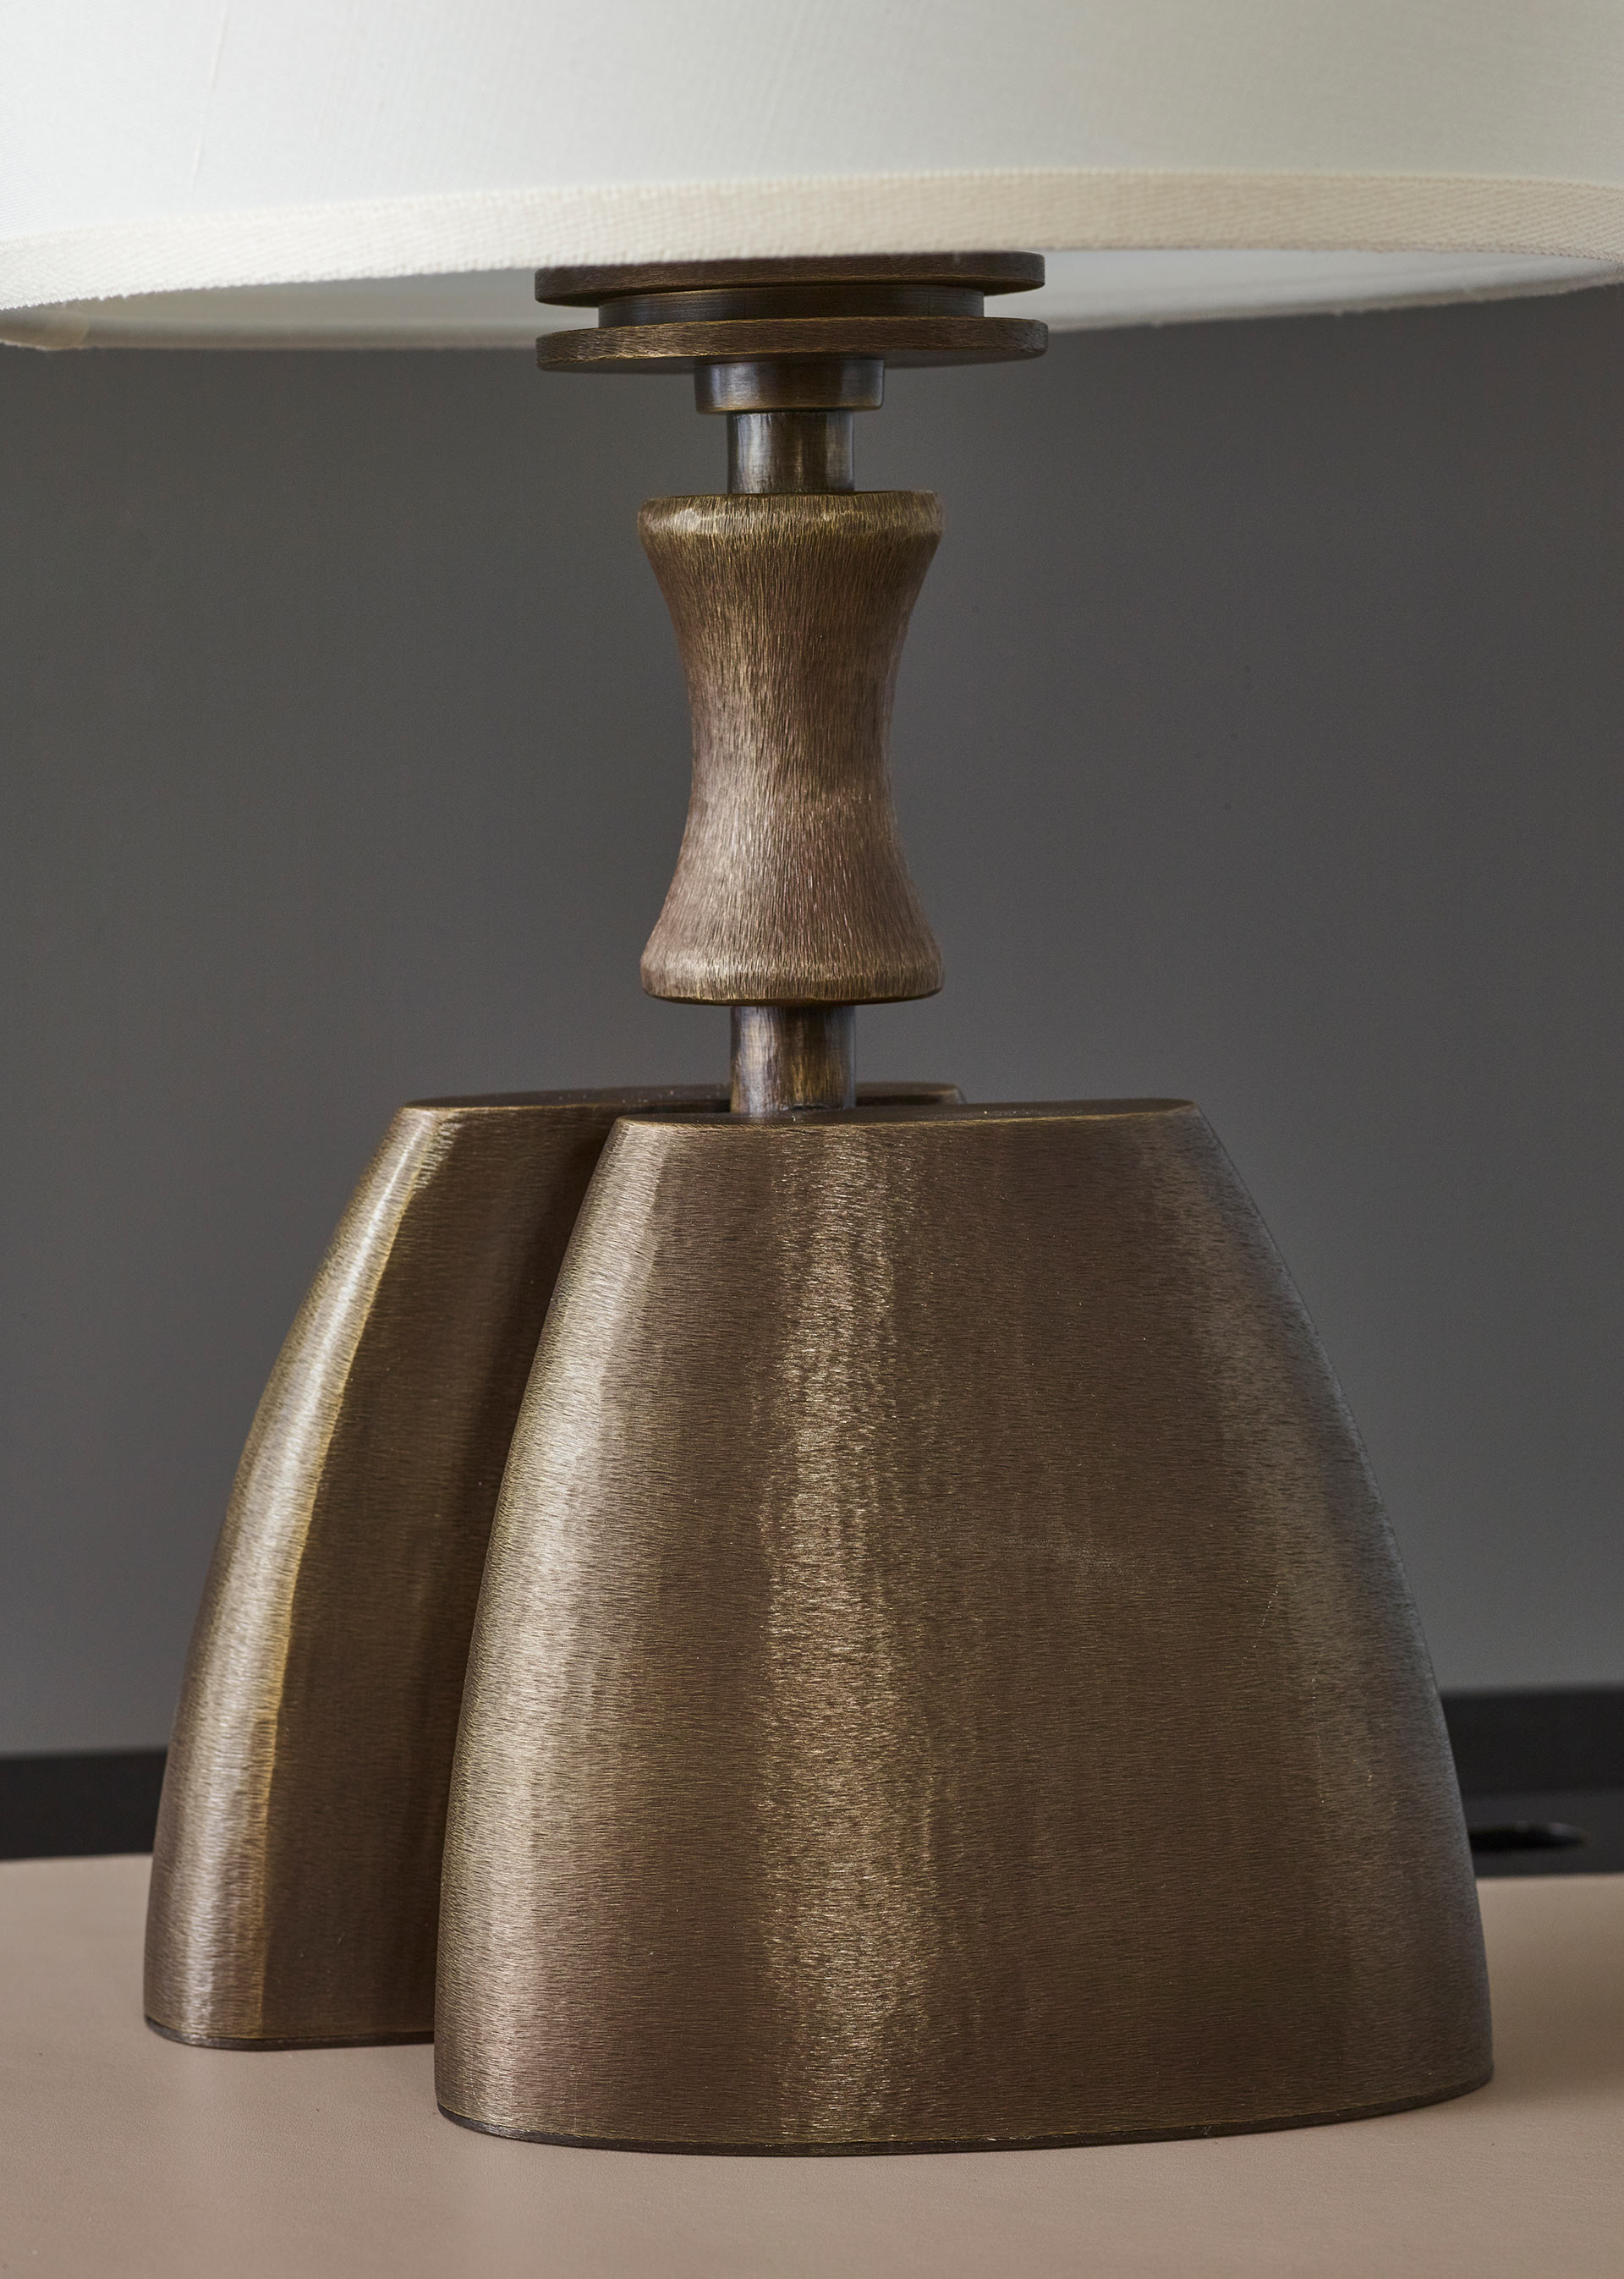 Dettaglio della base di Misultin, lampada da tavolo a LED con struttura in bronzo e paralume in lino, cotone o seta bordata a mano, del catalogo di Promemoria | Promemoria